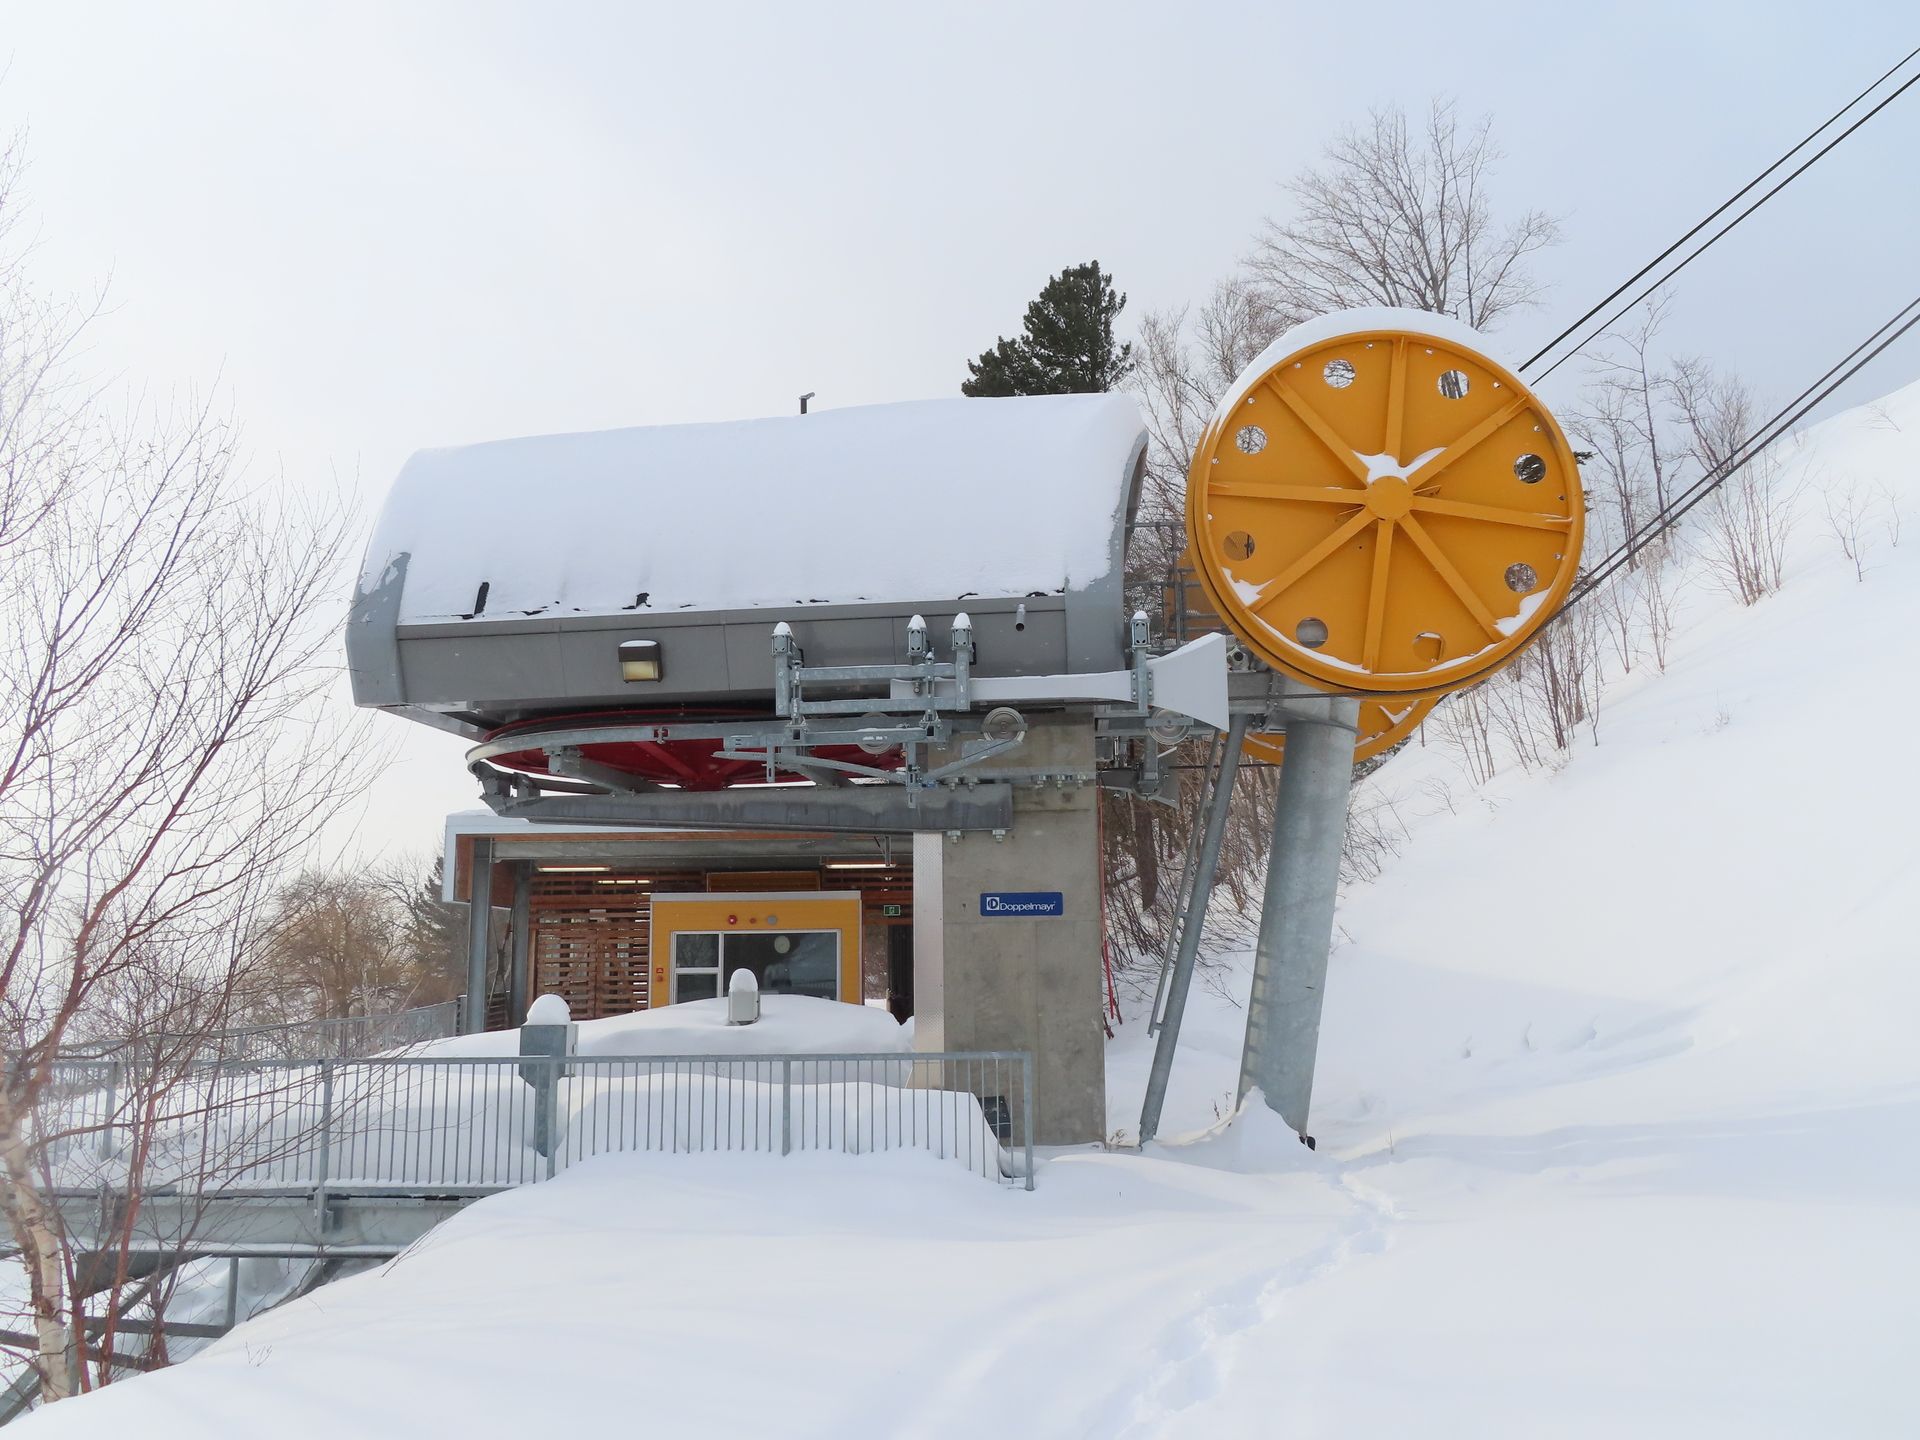 Telecabina Le Massif ski area estación de tren